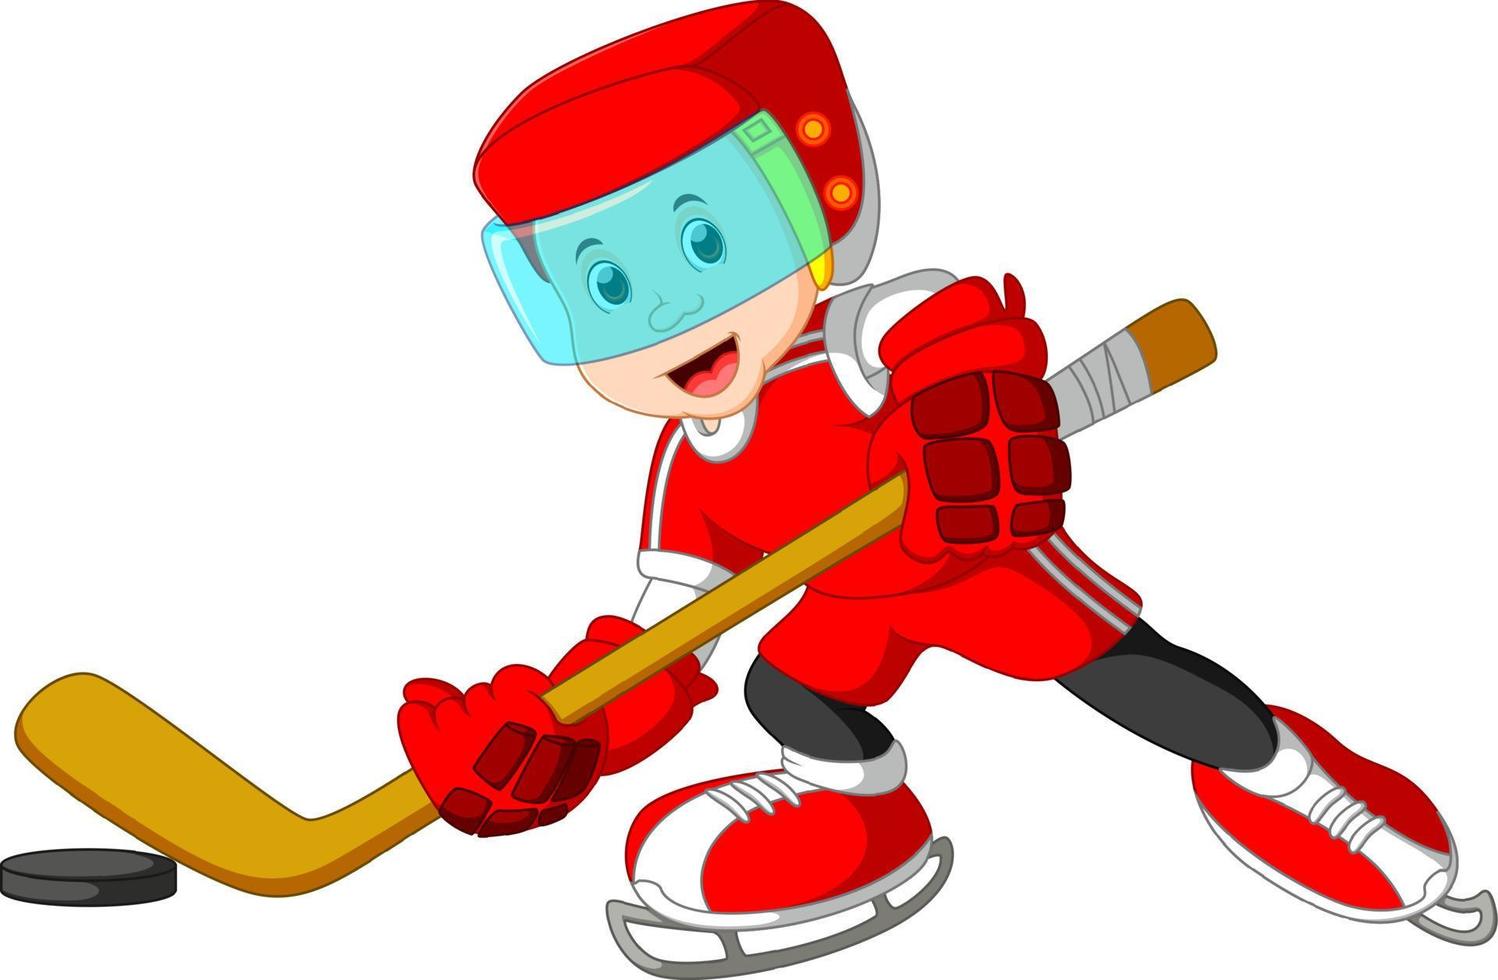 giocatore di hockey ragazzo cartone animato carino e giocoso vettore